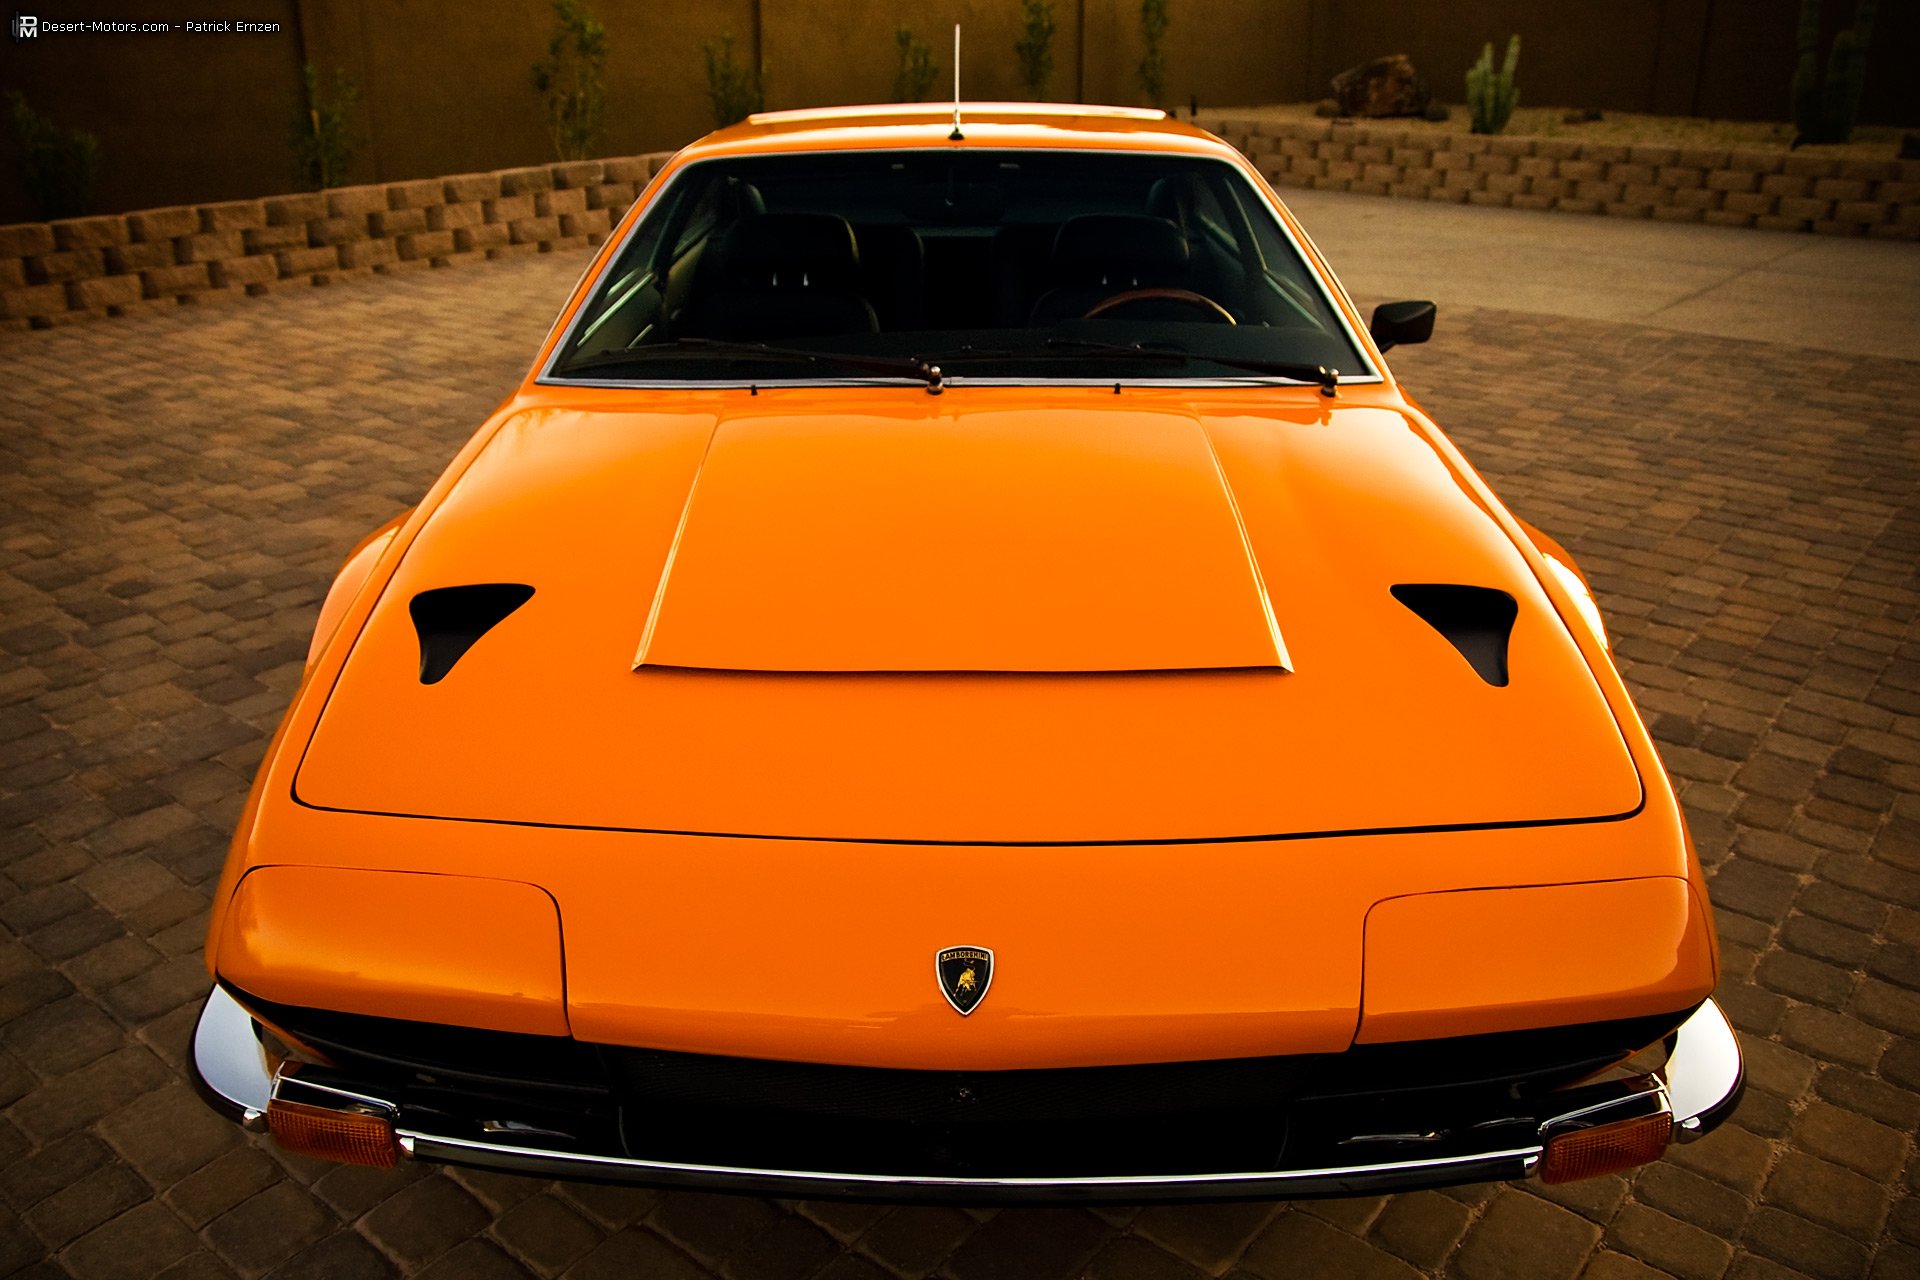 1973, Lamborghini, Jarama, Gts, Classic, Supercar Wallpaper